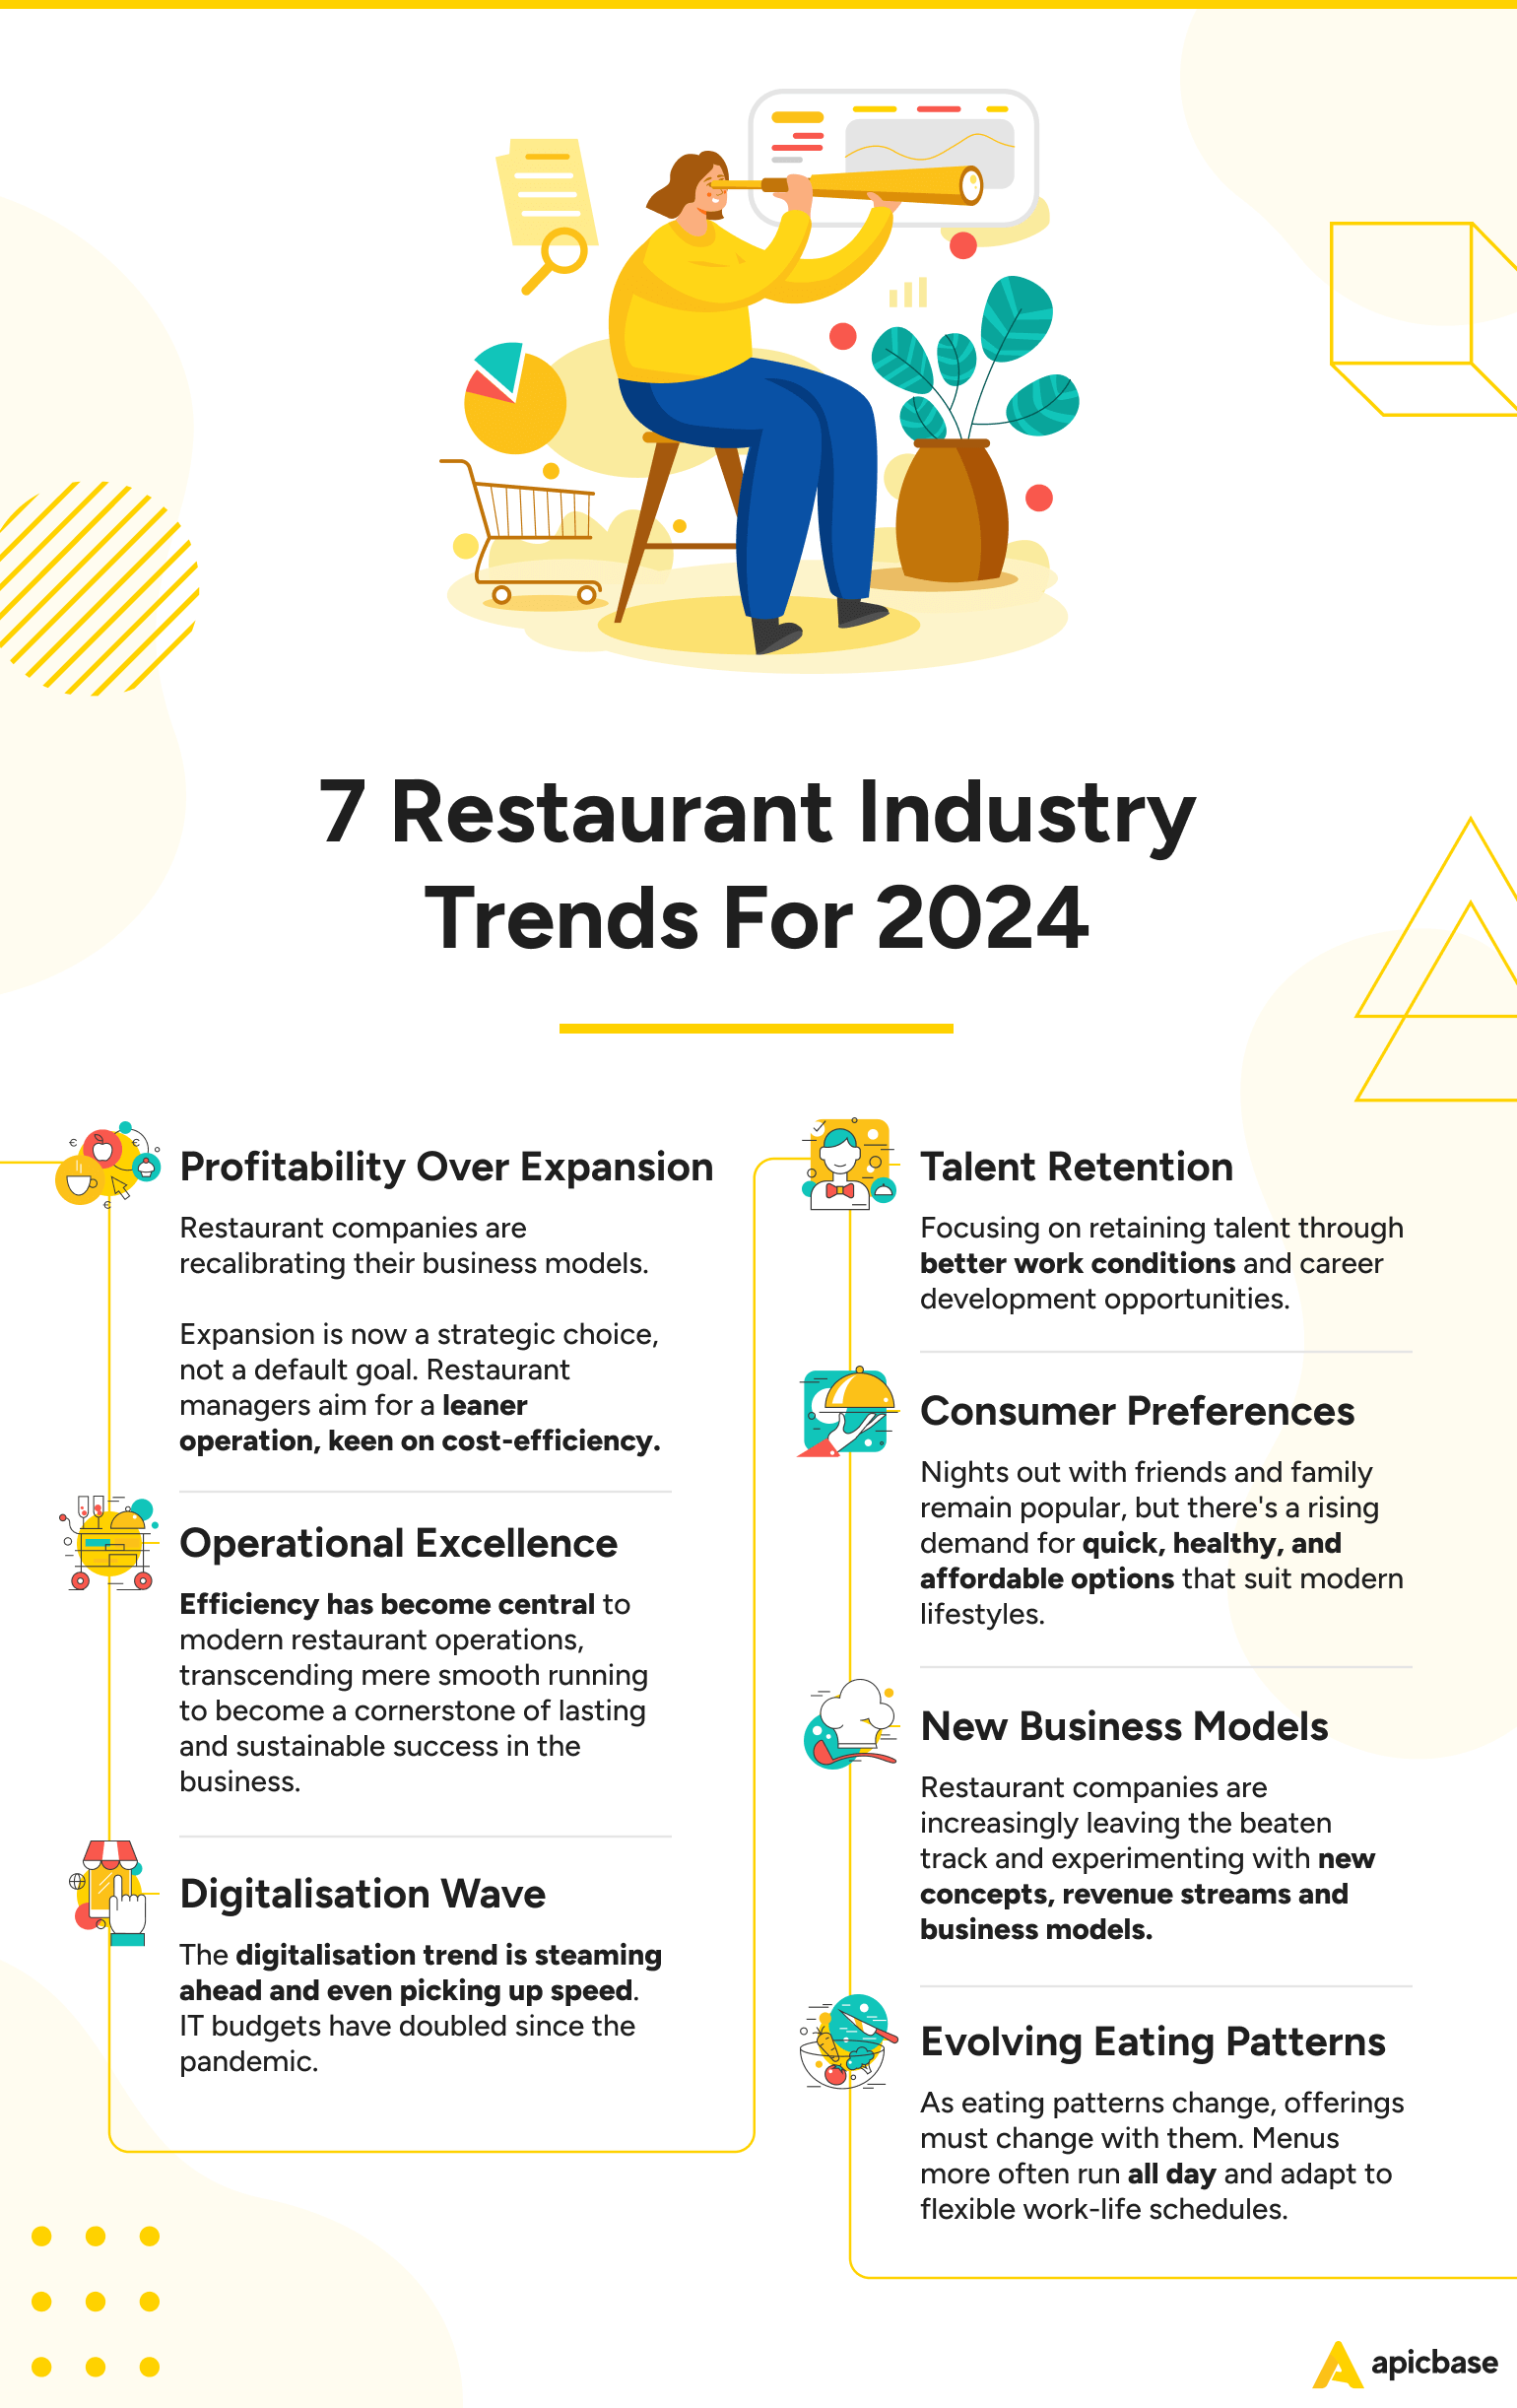 7 Restaurant Industry Trends 2024